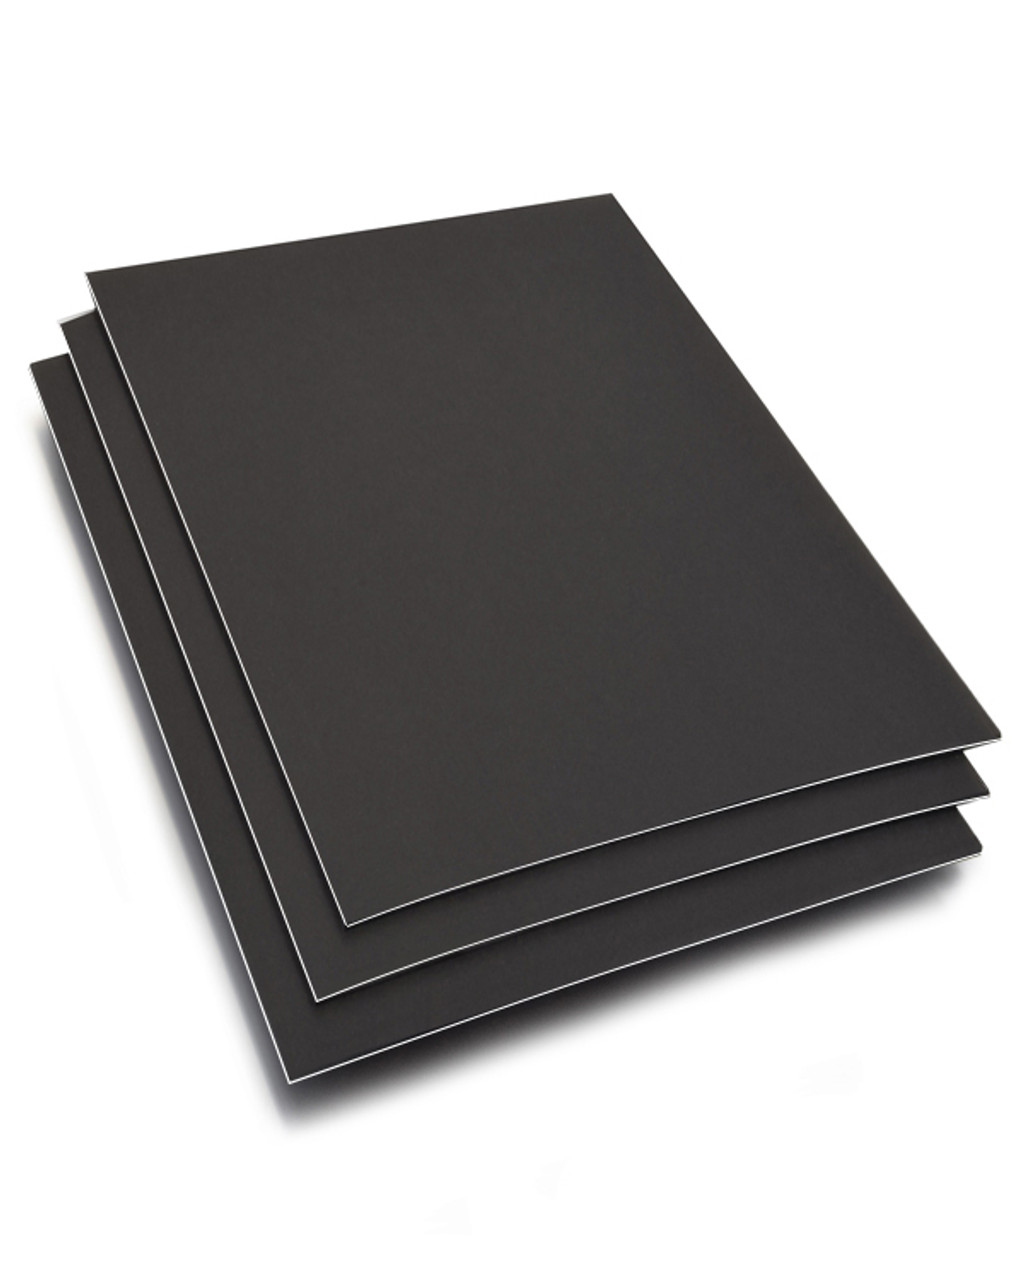 16 x 20 Black Core Double Mat Packages